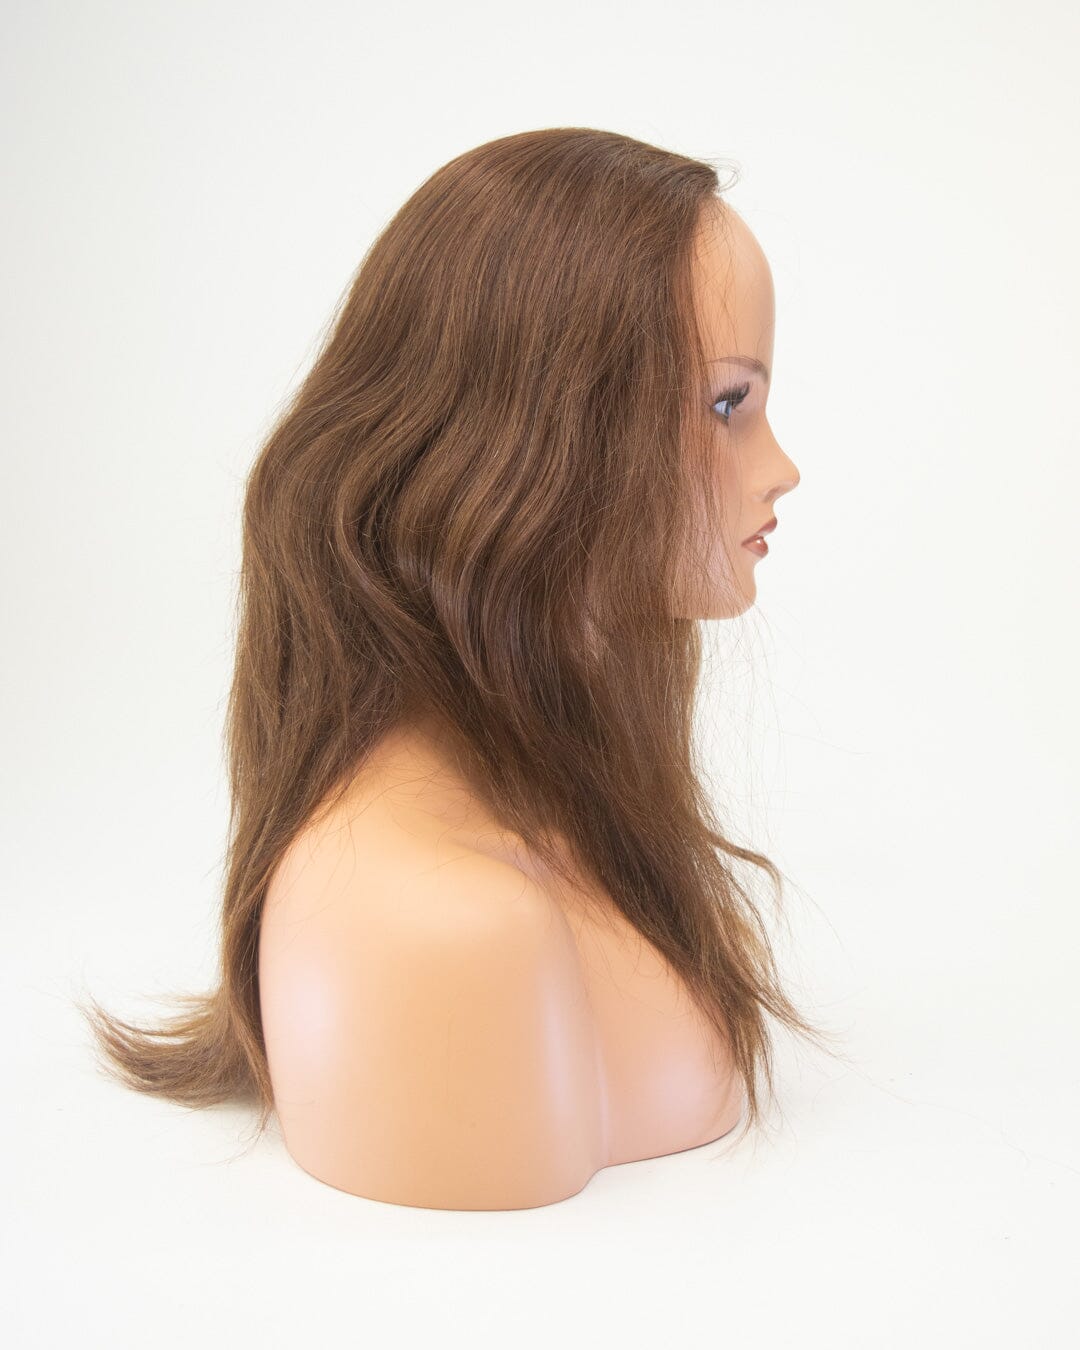 Medum Brown 60cm Human Hair Wig